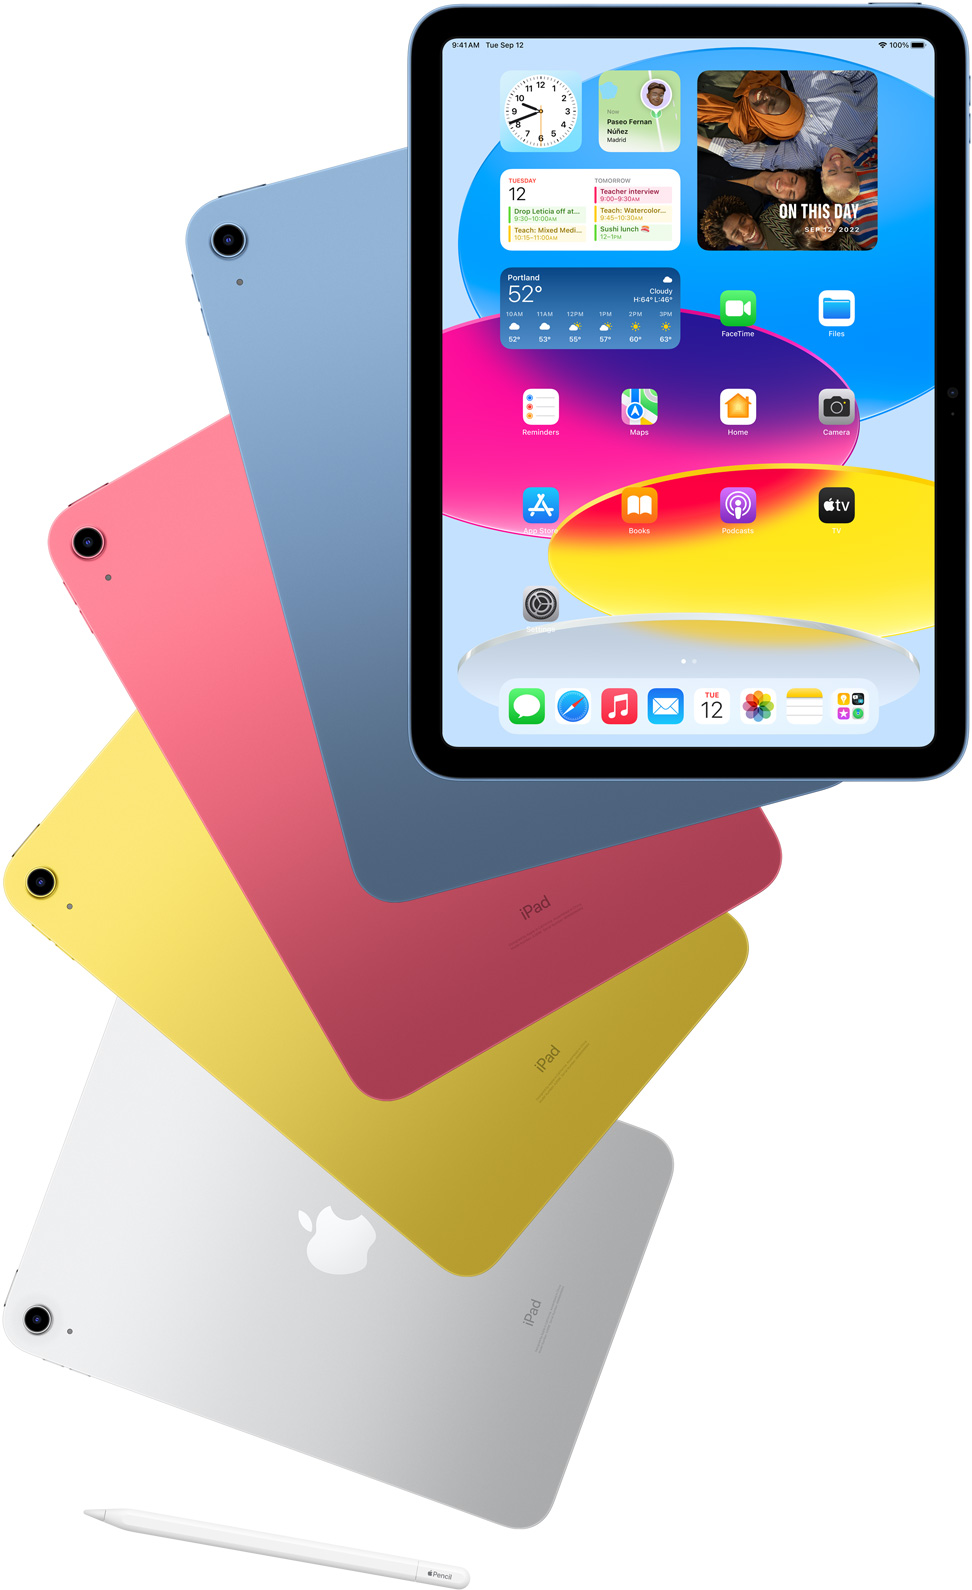 Widoczny od przodu iPad z włączonym ekranem początkowym i wyłaniające się zza niego zwrócone tyłem iPady w kolorach niebieskim, czerwonym, żółtym i srebrnym. Przy ułożonych kaskadowo iPadach leży Apple Pencil.